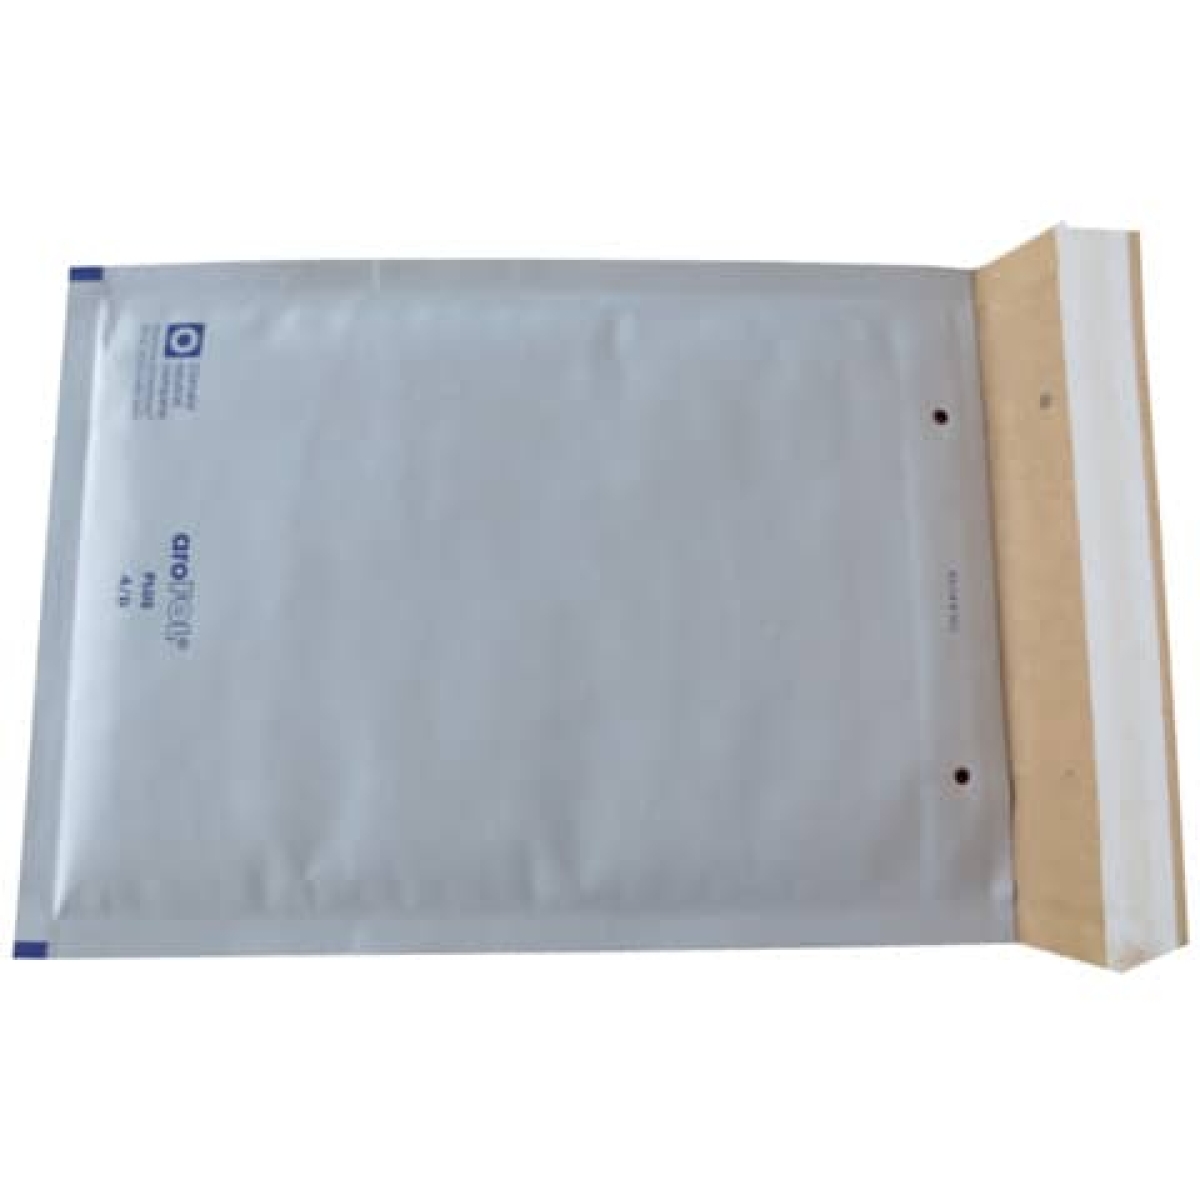 AROFOLBubble bag Plus 4/D, 180x165mm, 100 pieces, white 2FVAF000204-Price for 100 pcs.Article-No: 4009445017693